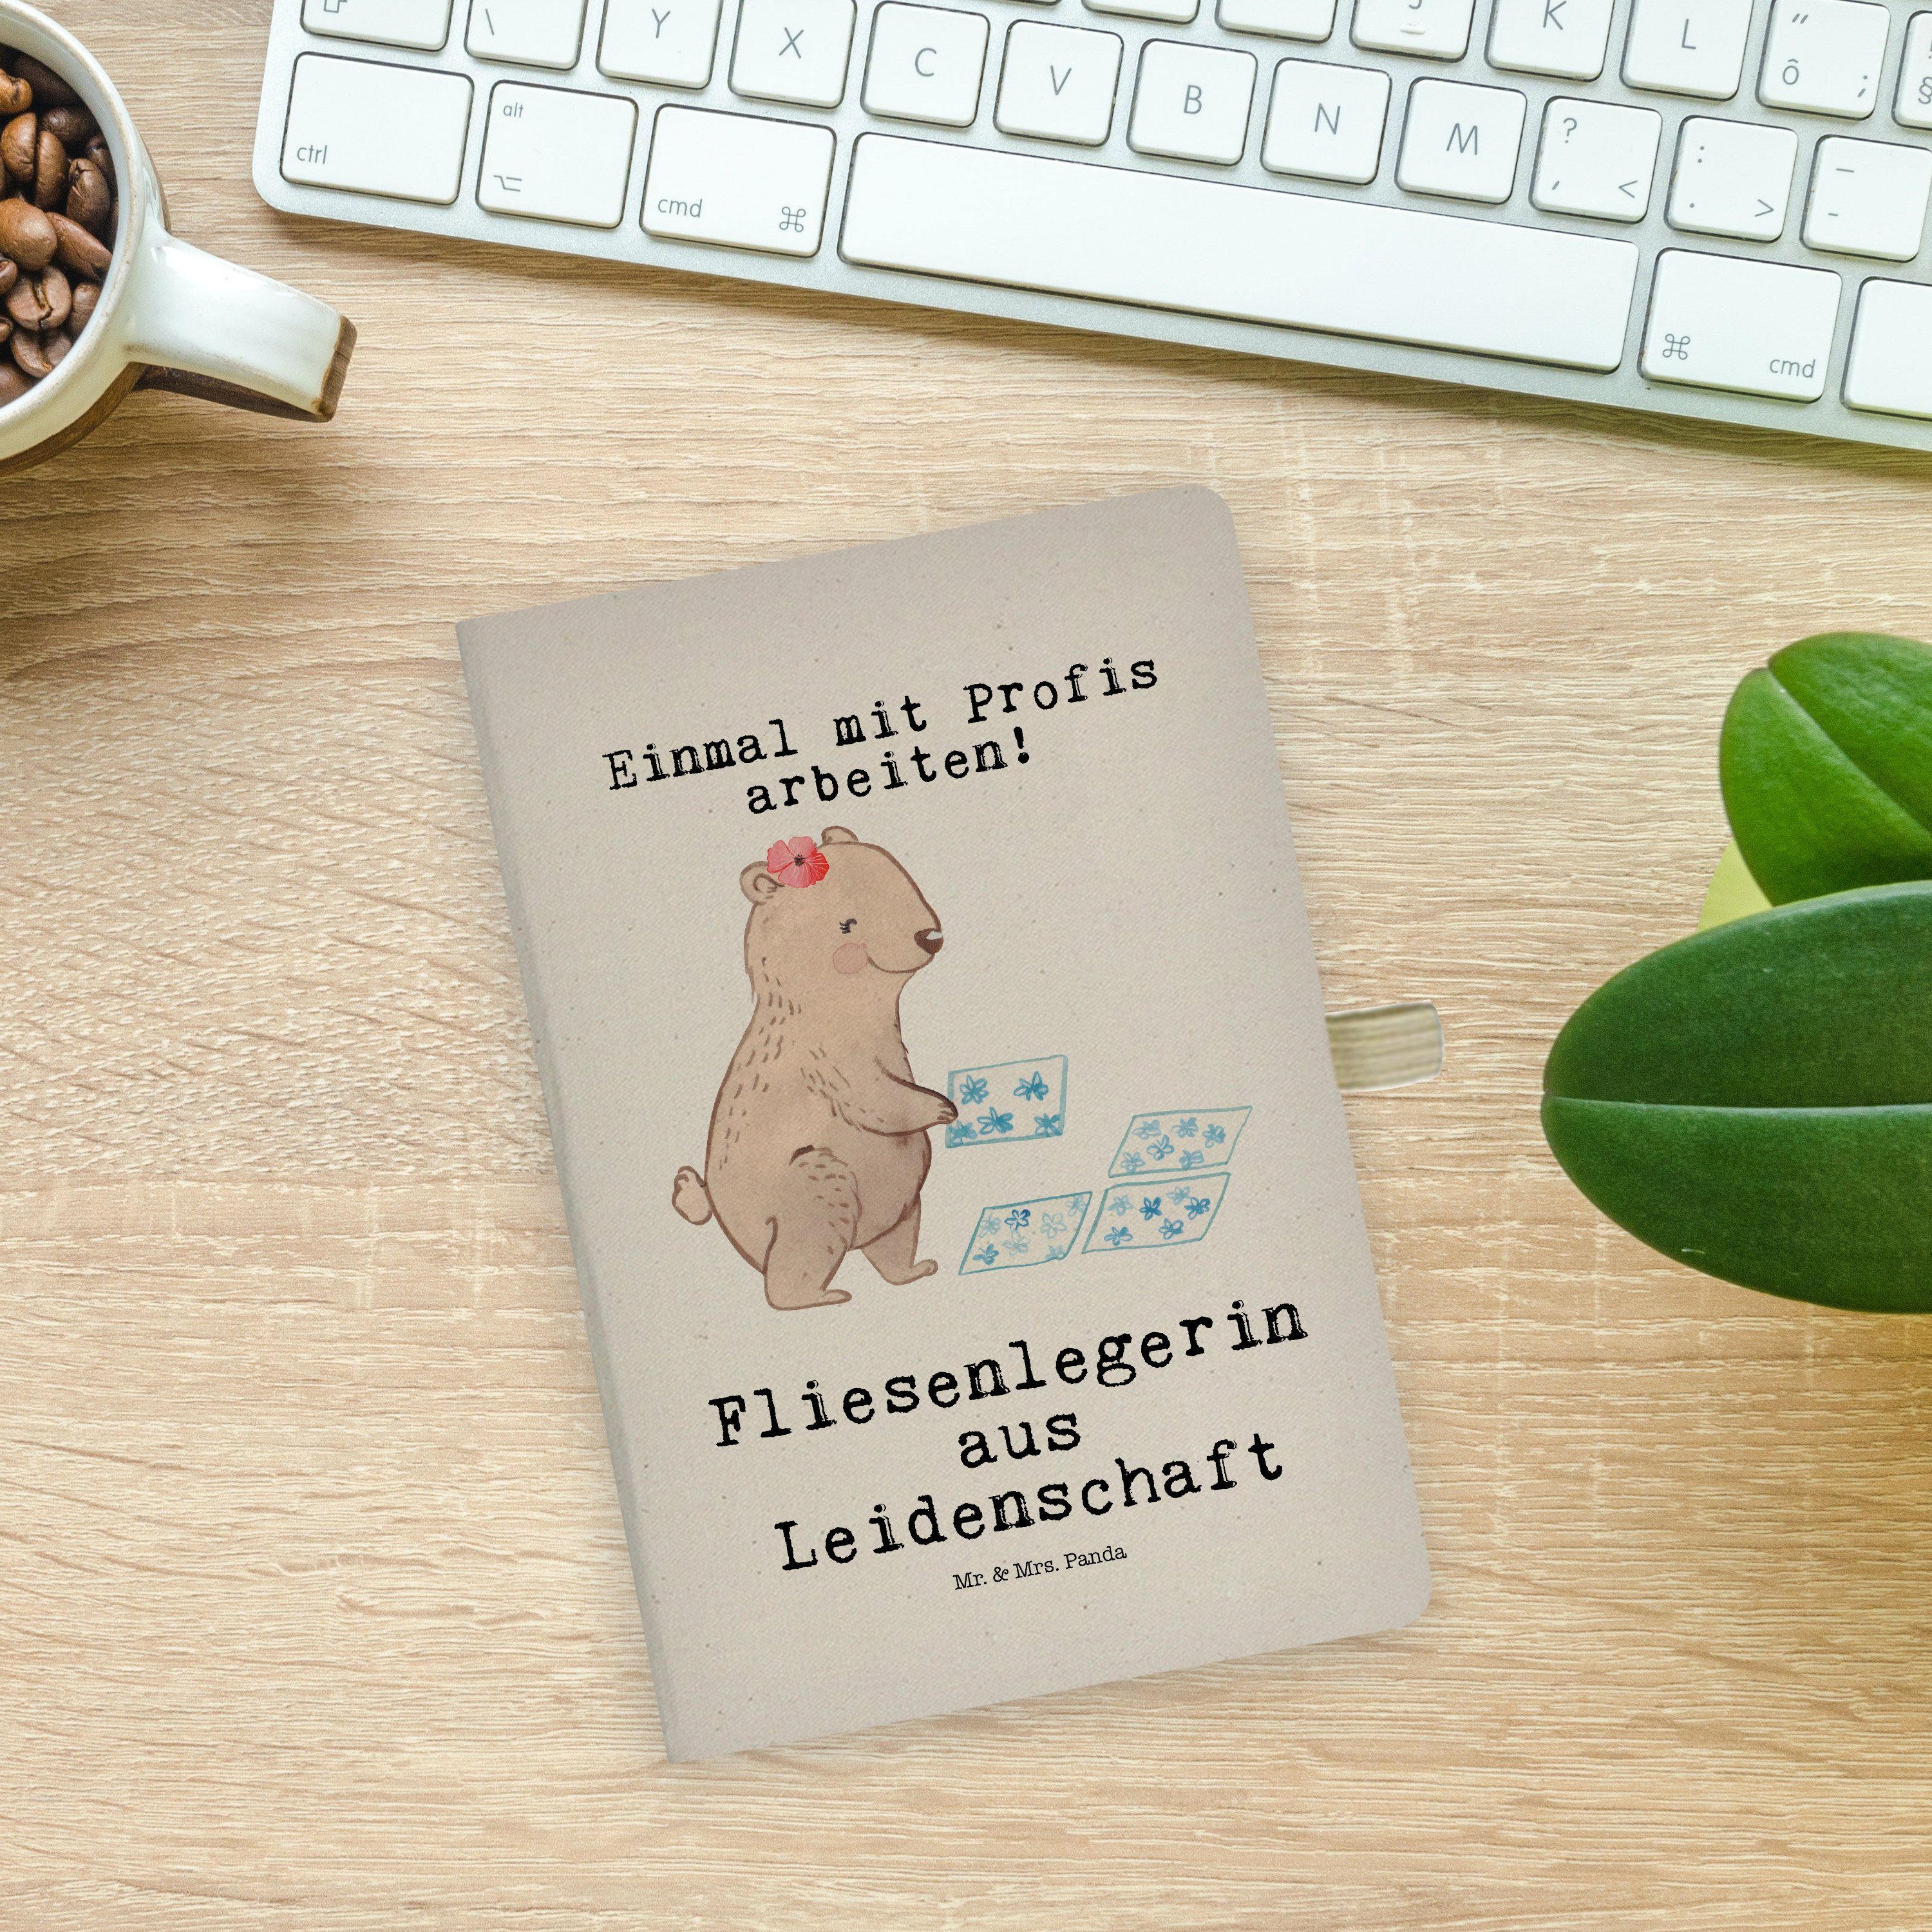 Fliesenlege Mrs. Transparent Fliesenlegerin - Notizbuch & Mrs. - Geschenk, aus Mr. Leidenschaft Panda & Panda Mr.